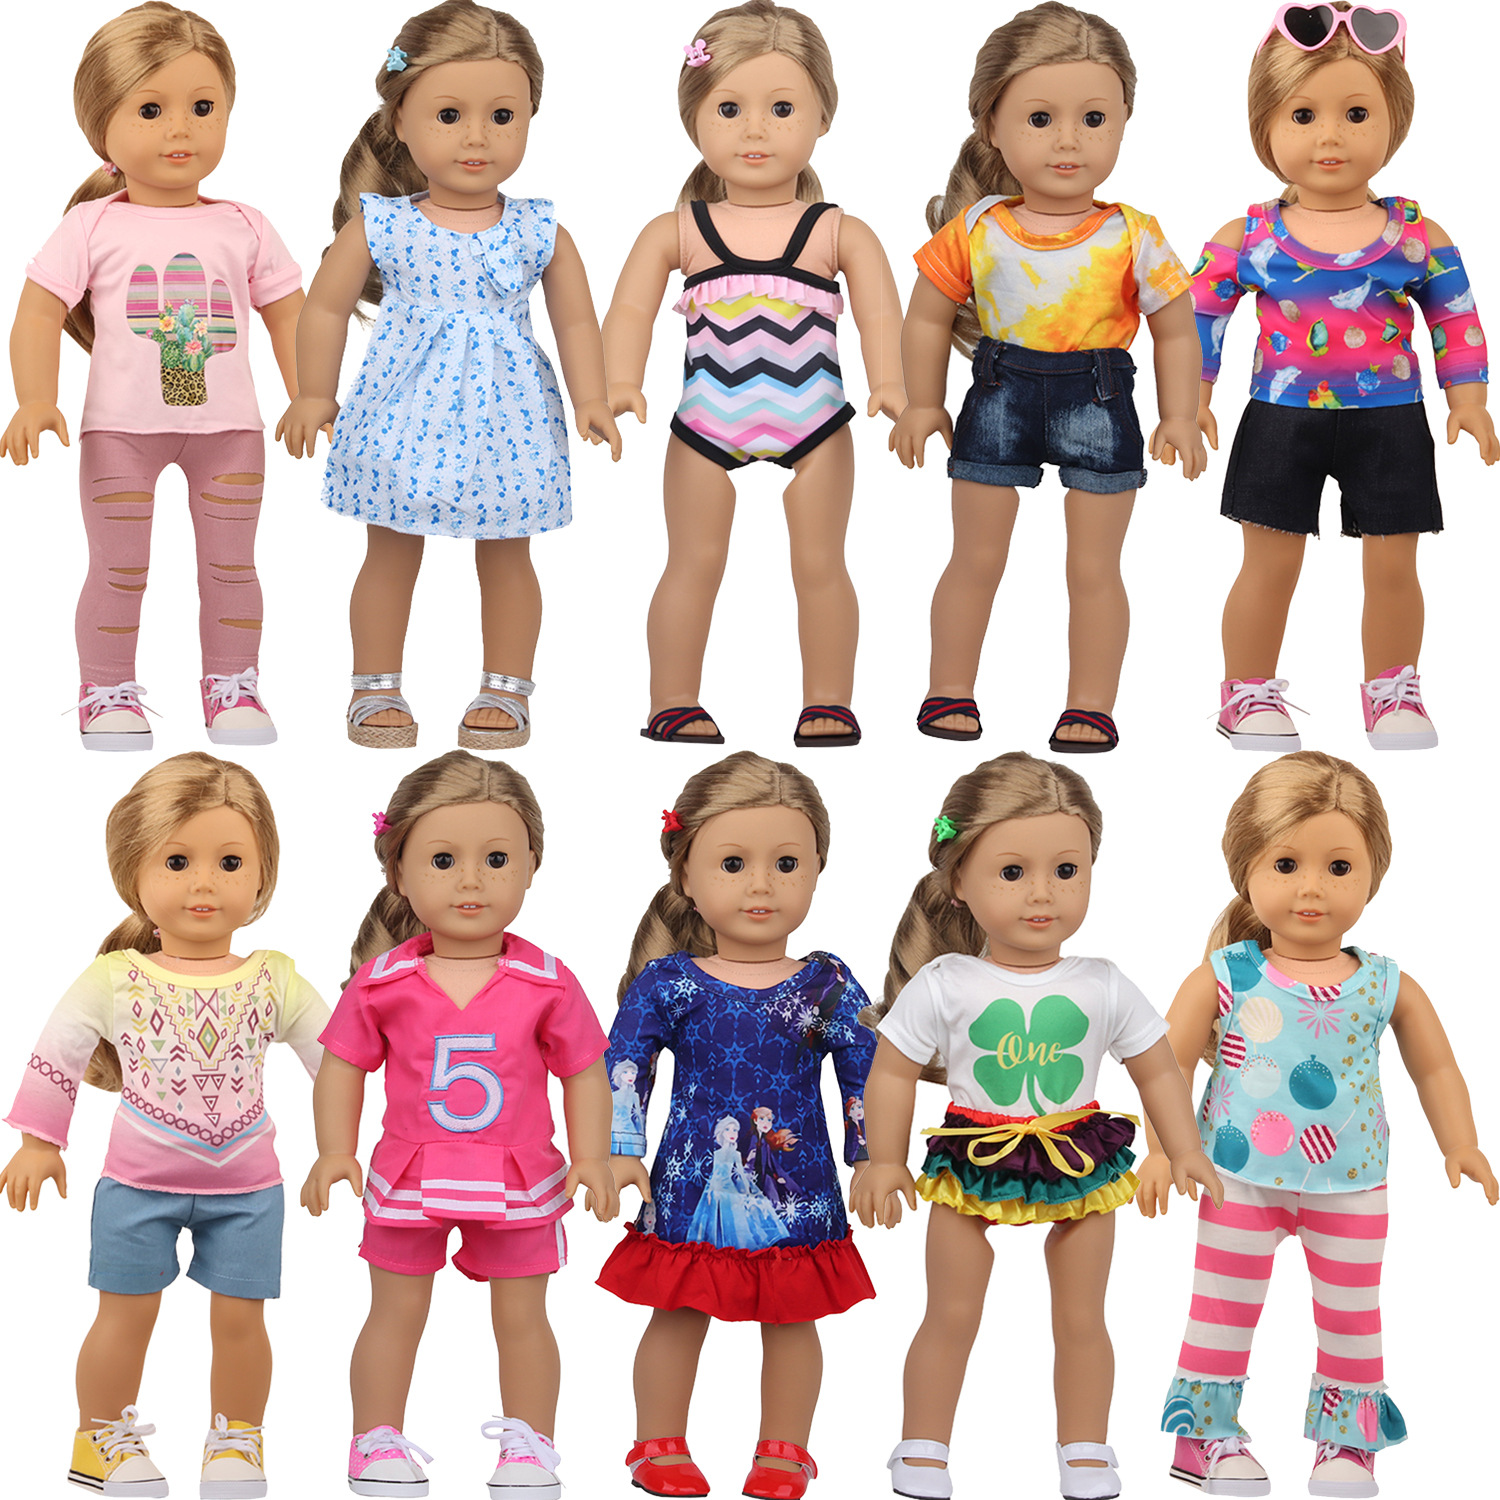 米素娃娃衣服套装 18寸美国女孩娃娃衣服十件套换装 泳装 四叶草